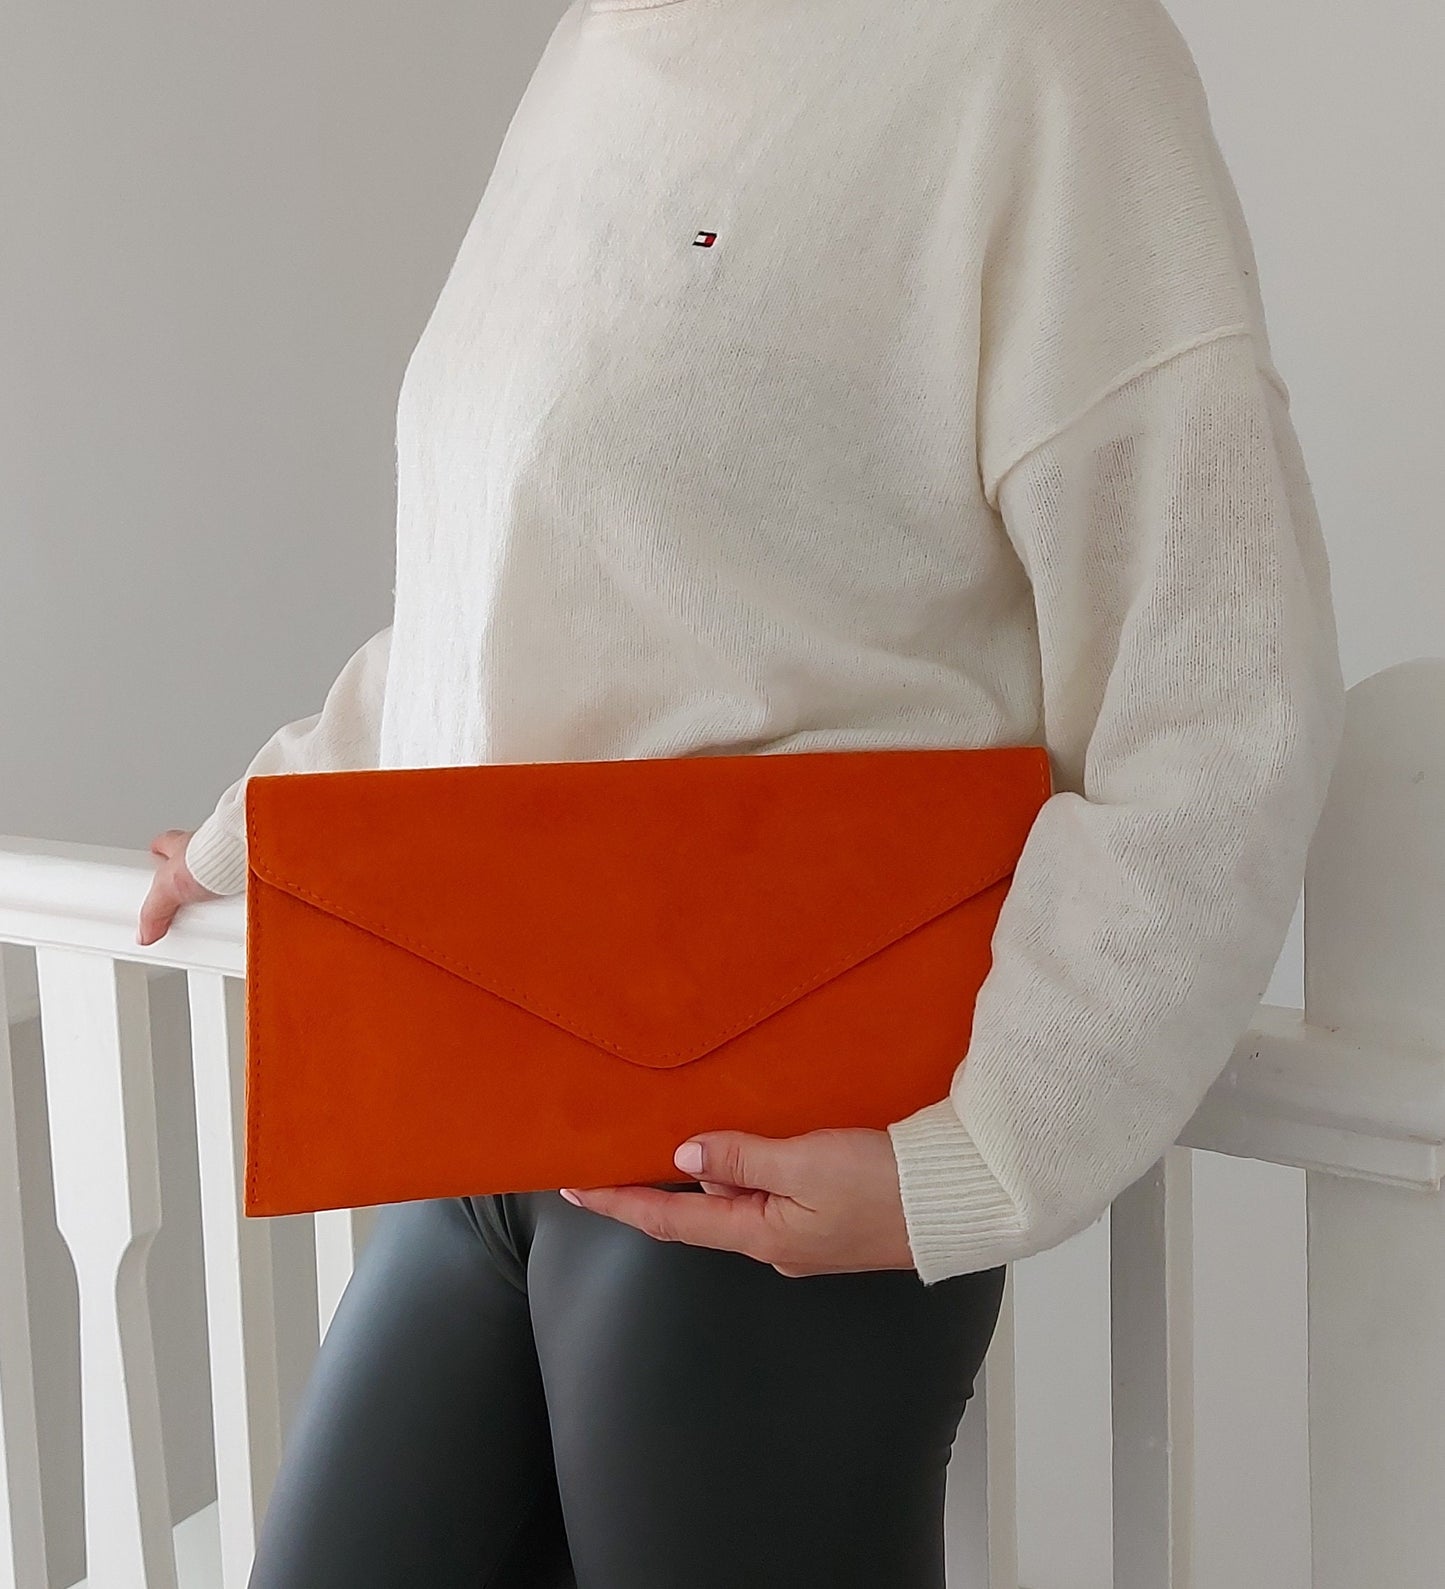 Red envelope clutch bag